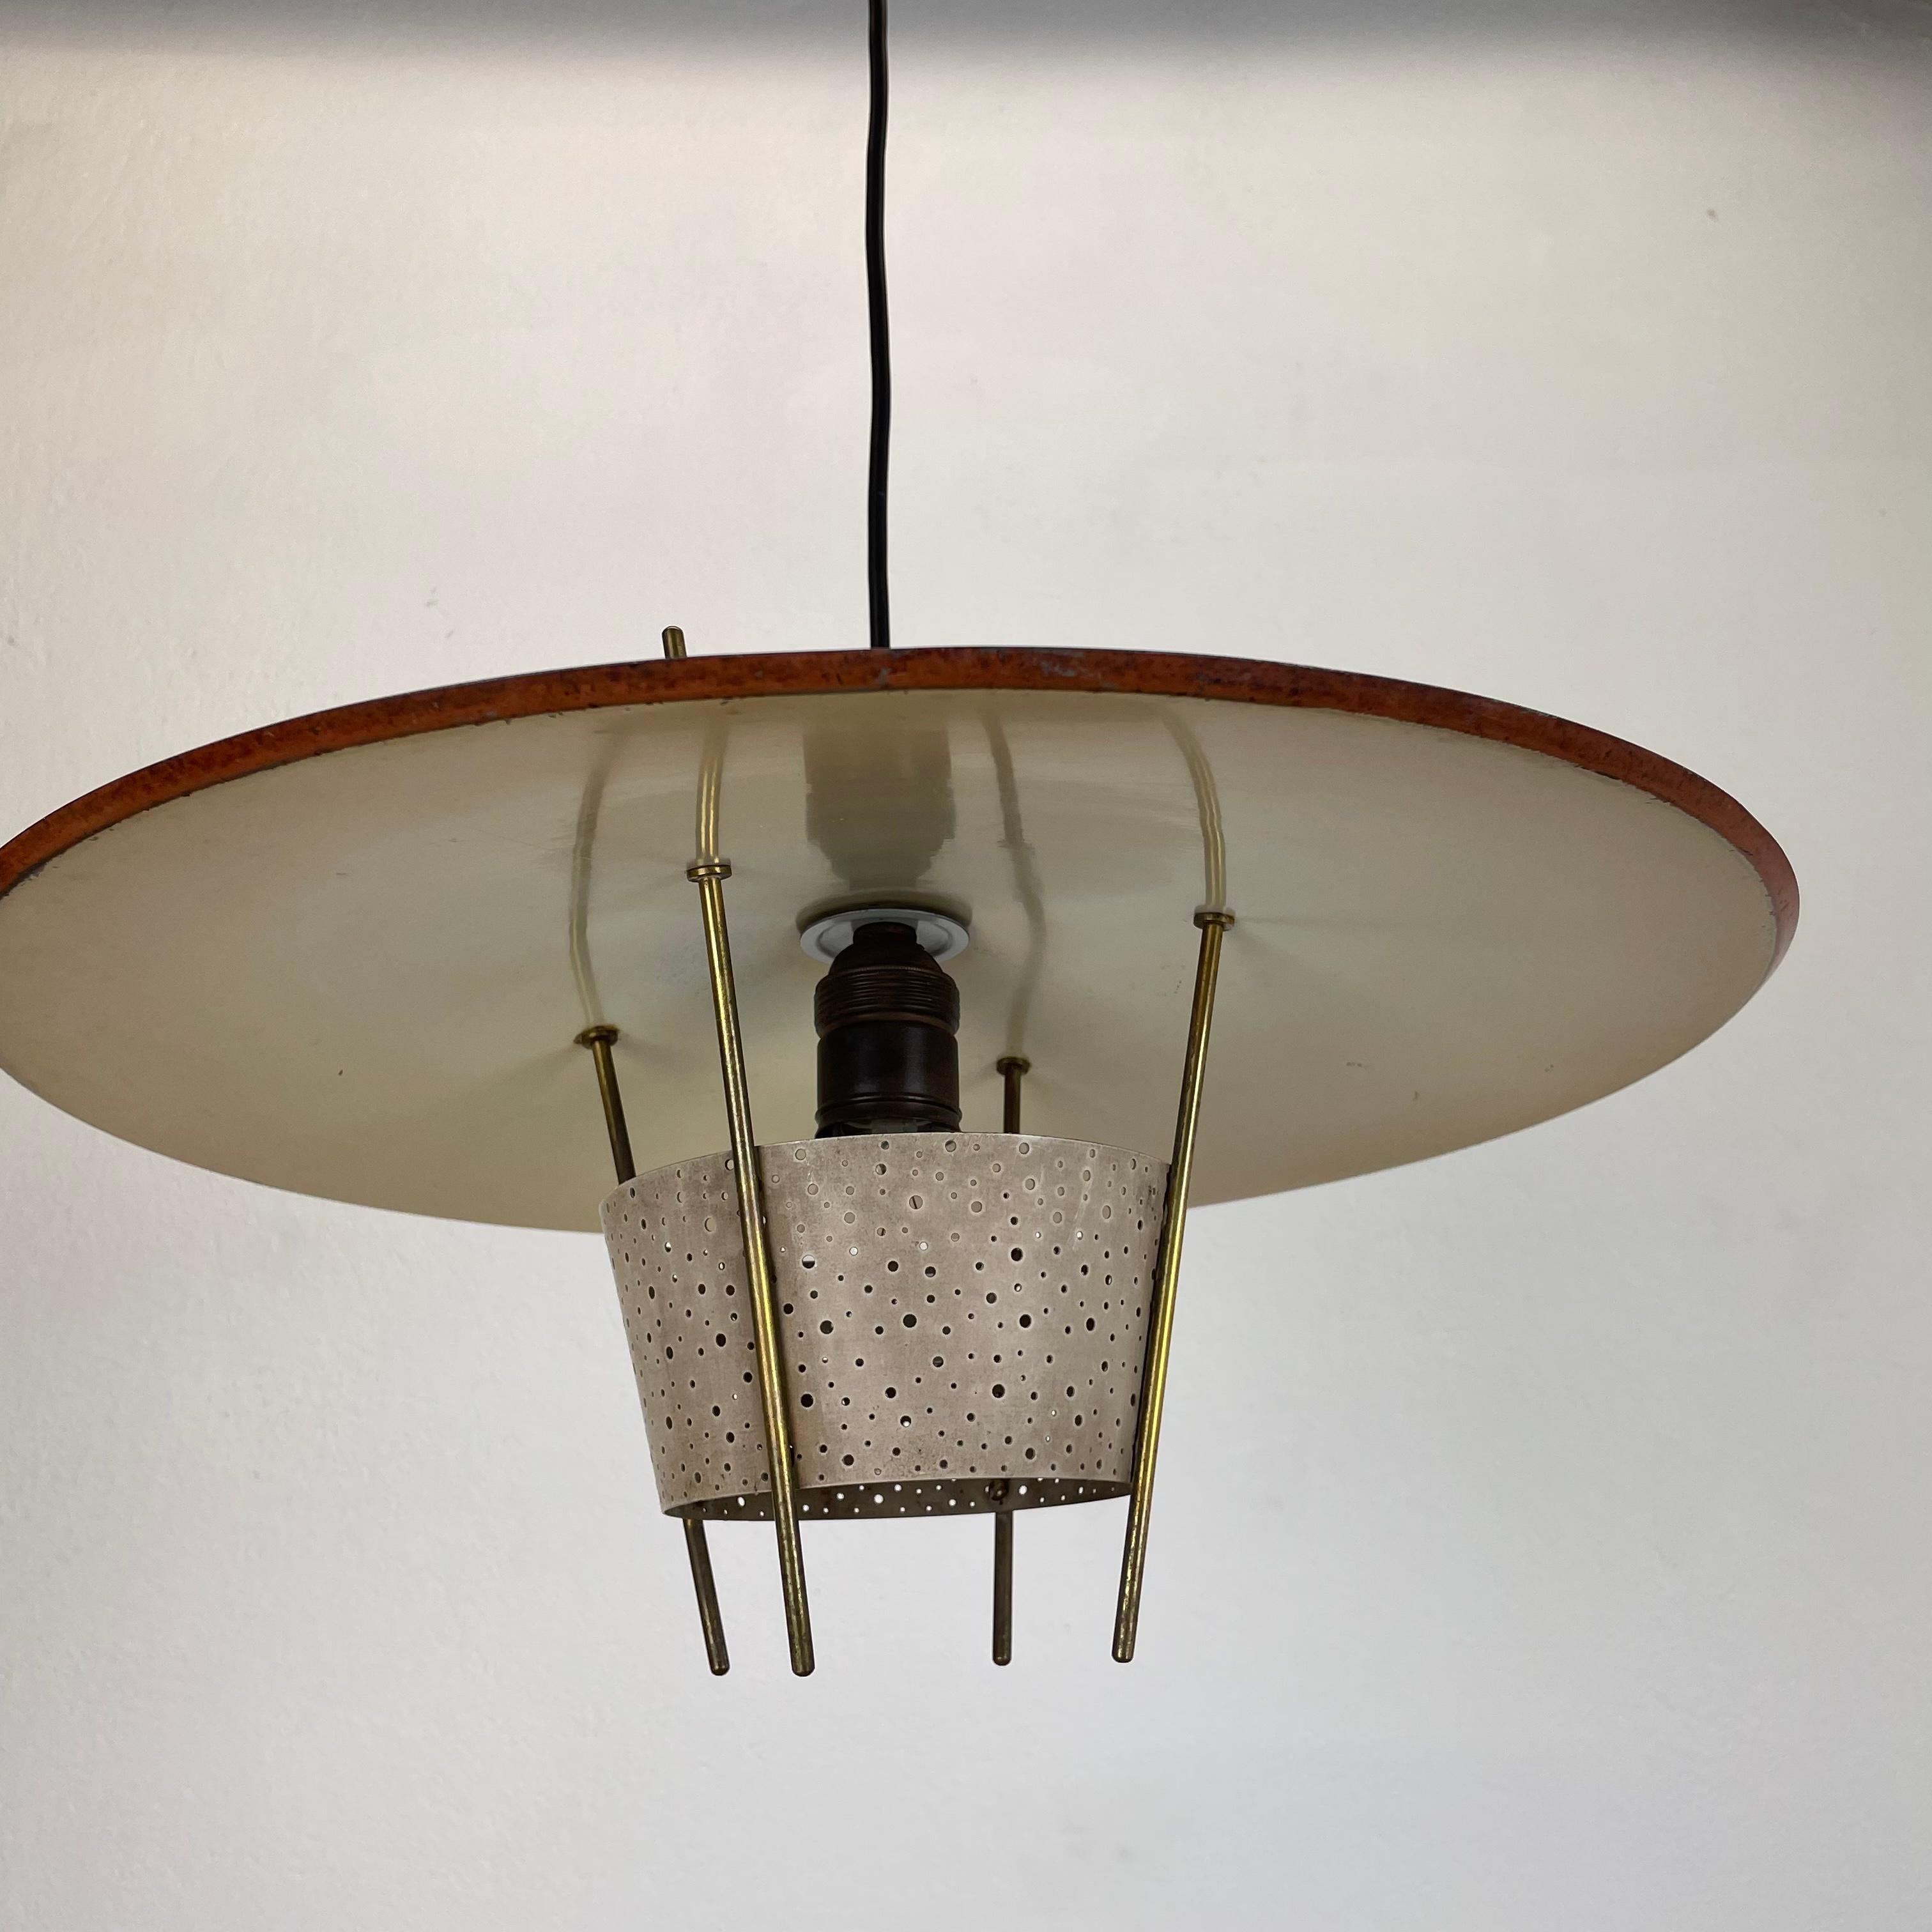 Metal Modernist Stilnovo Style Hanging Light by Ernest Igl for Hillebrand Germany 1960 For Sale